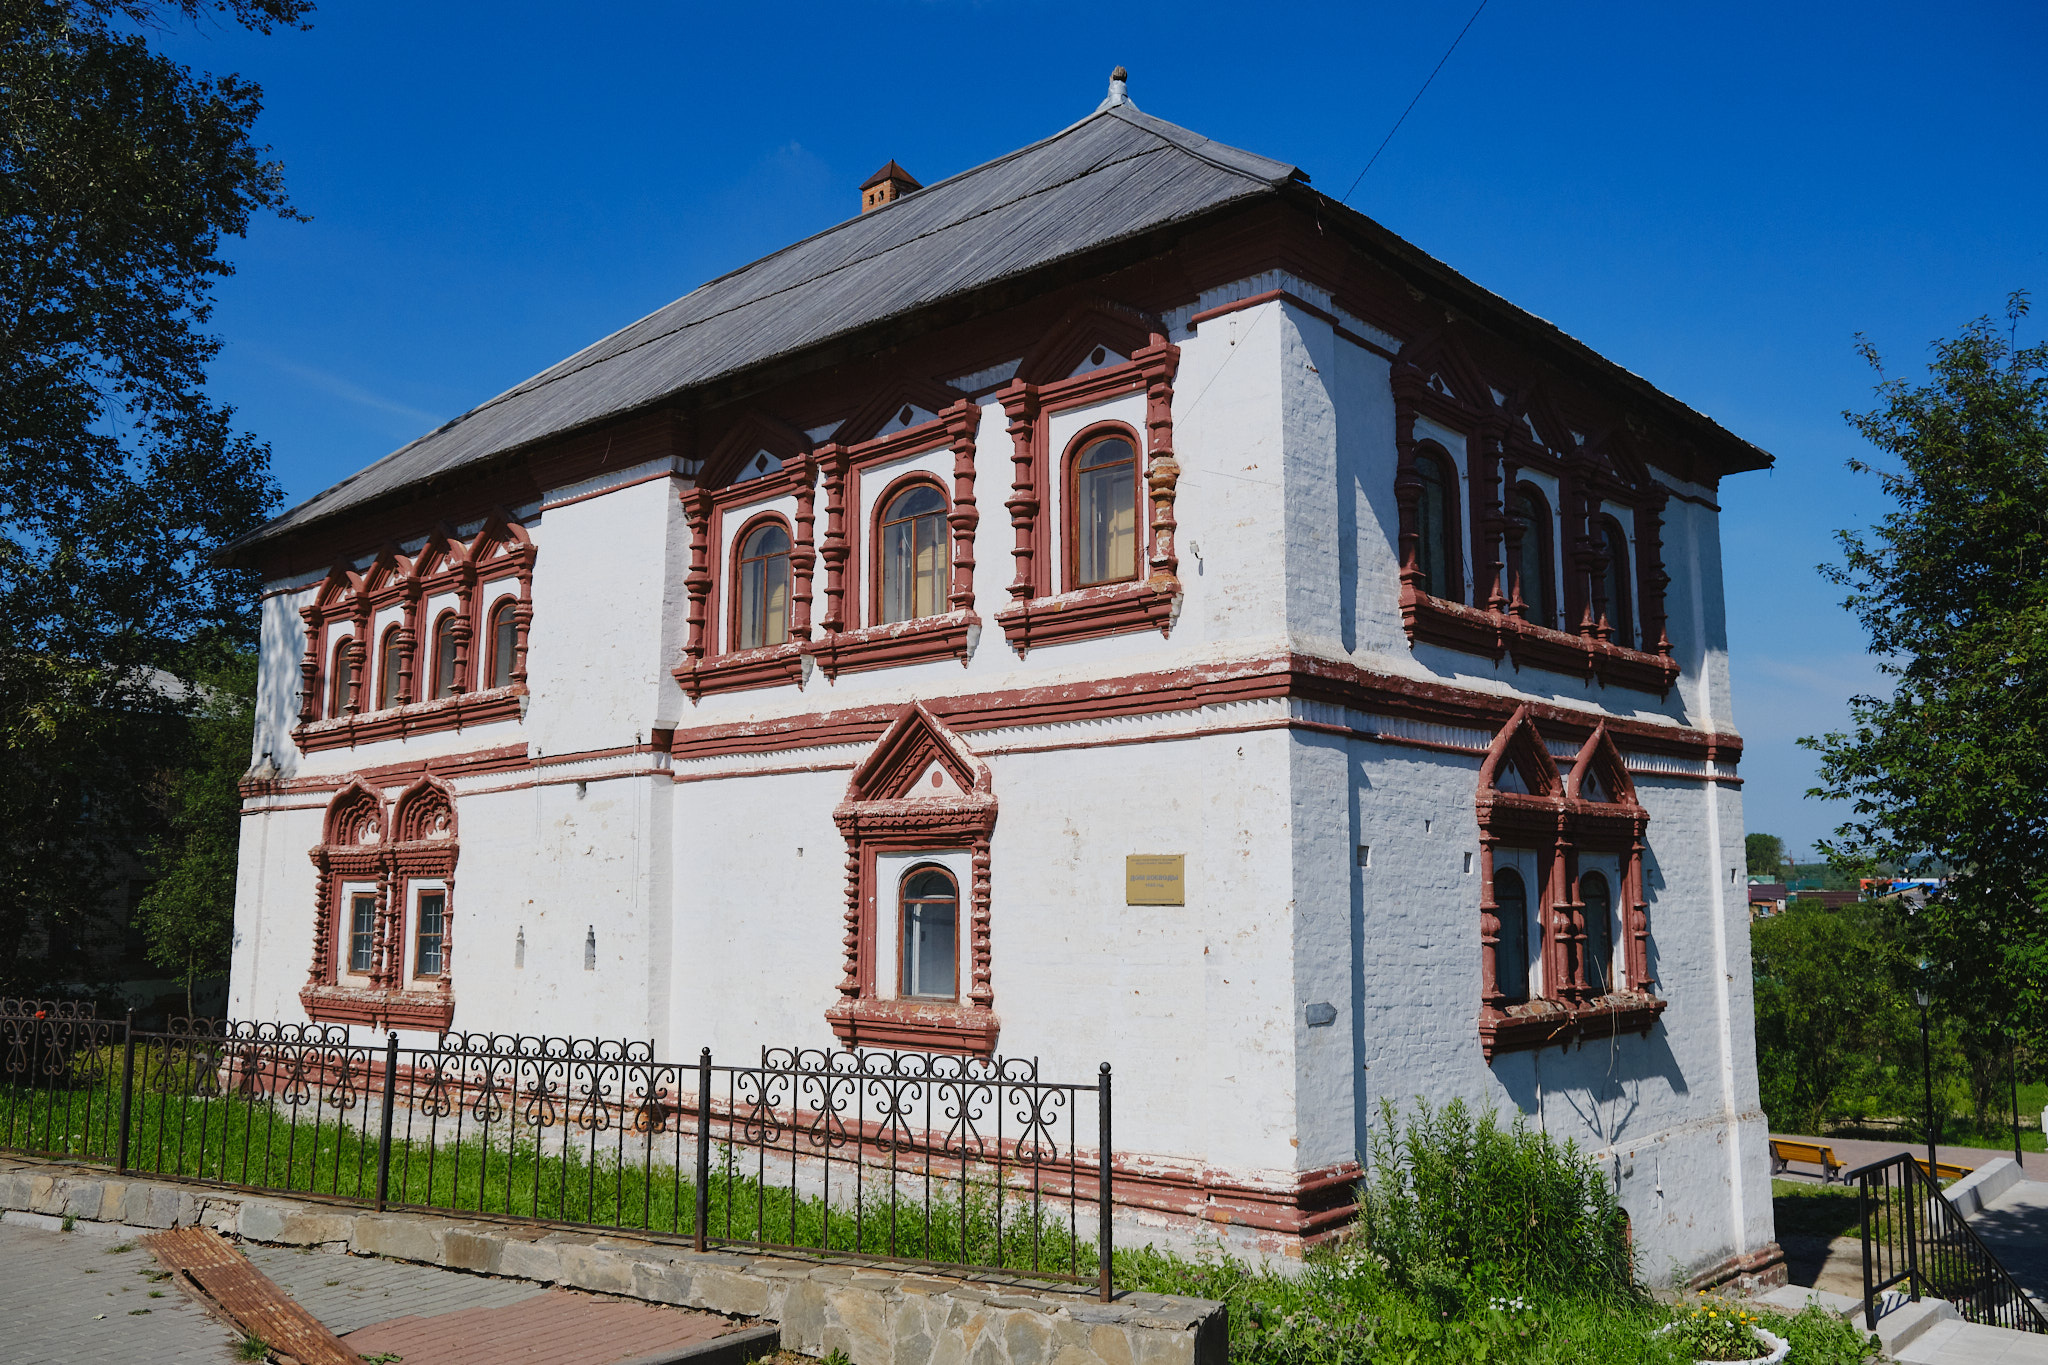 Дом воеводы — первое каменное здание на Урале. Находится между Соборной колокольней и Музеем древнерусского искусства